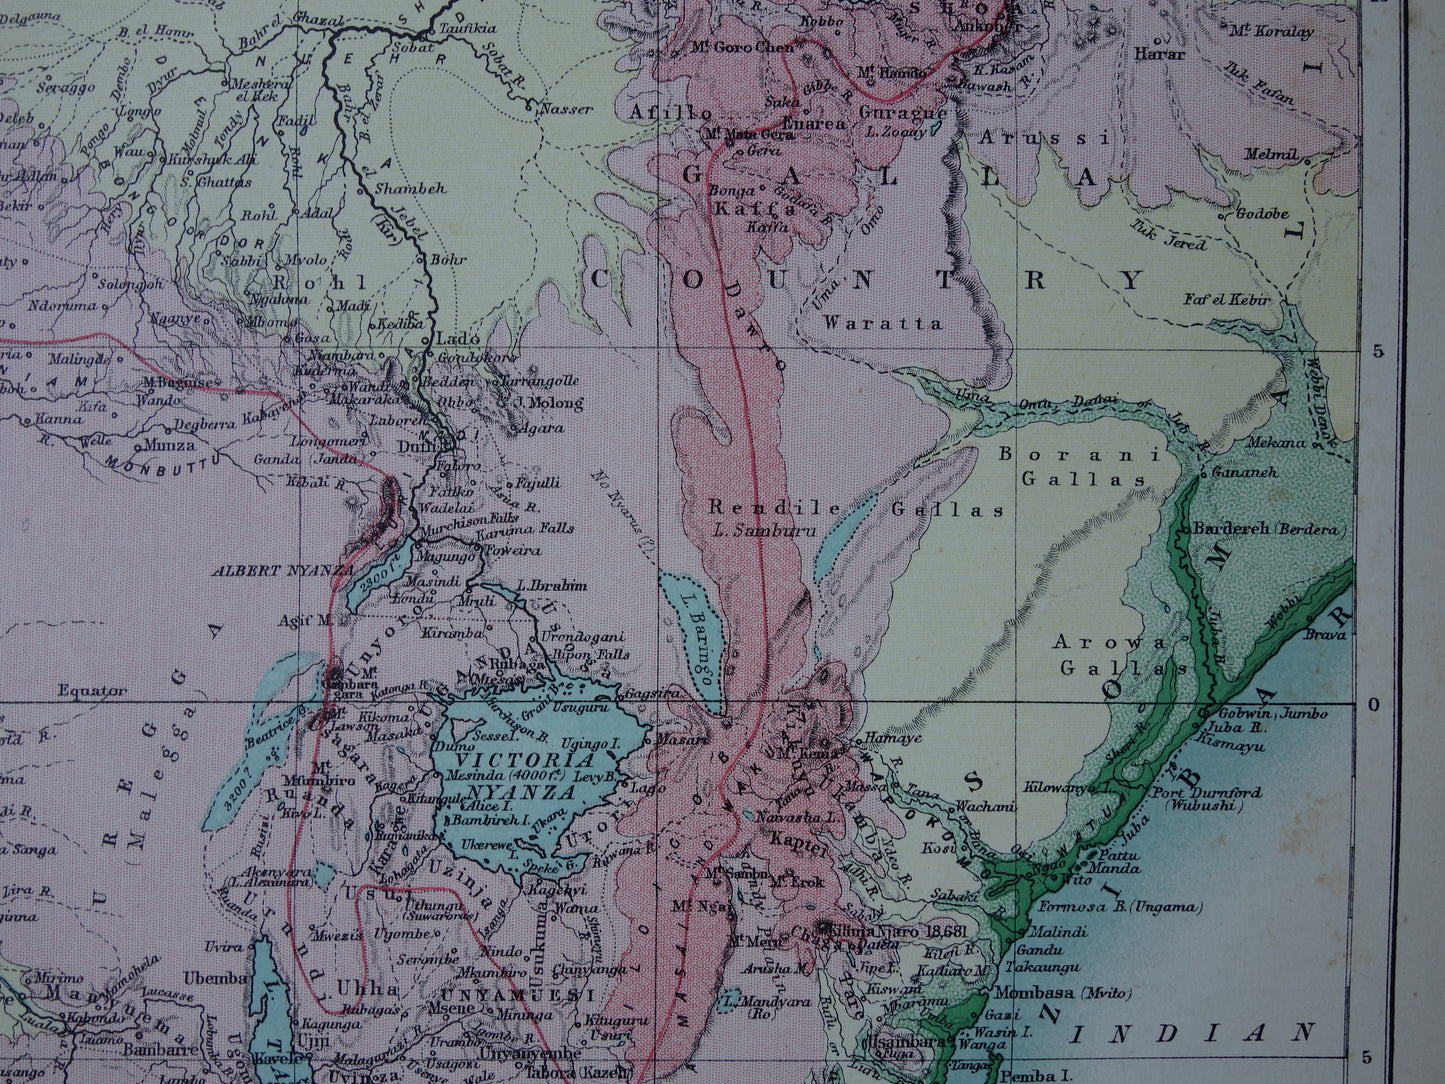 Rivier de Nijl oude kaart van bovenloop Nijl originele antieke Engelse landkaart uit 1884 vintage kaarten Soedan Victoriameer